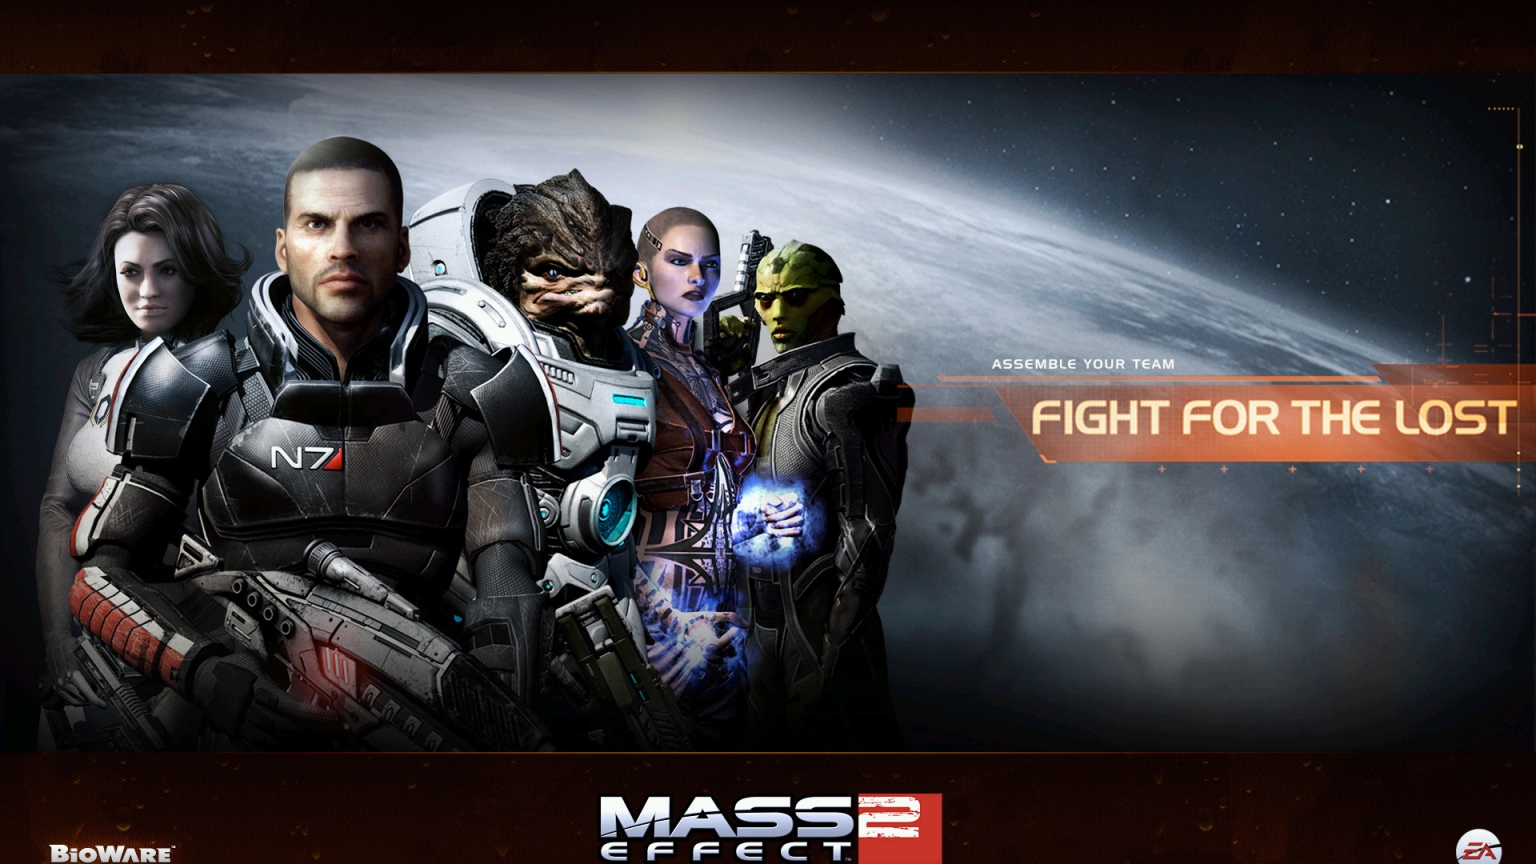 Mass Effect 2 for 1536 x 864 HDTV resolution